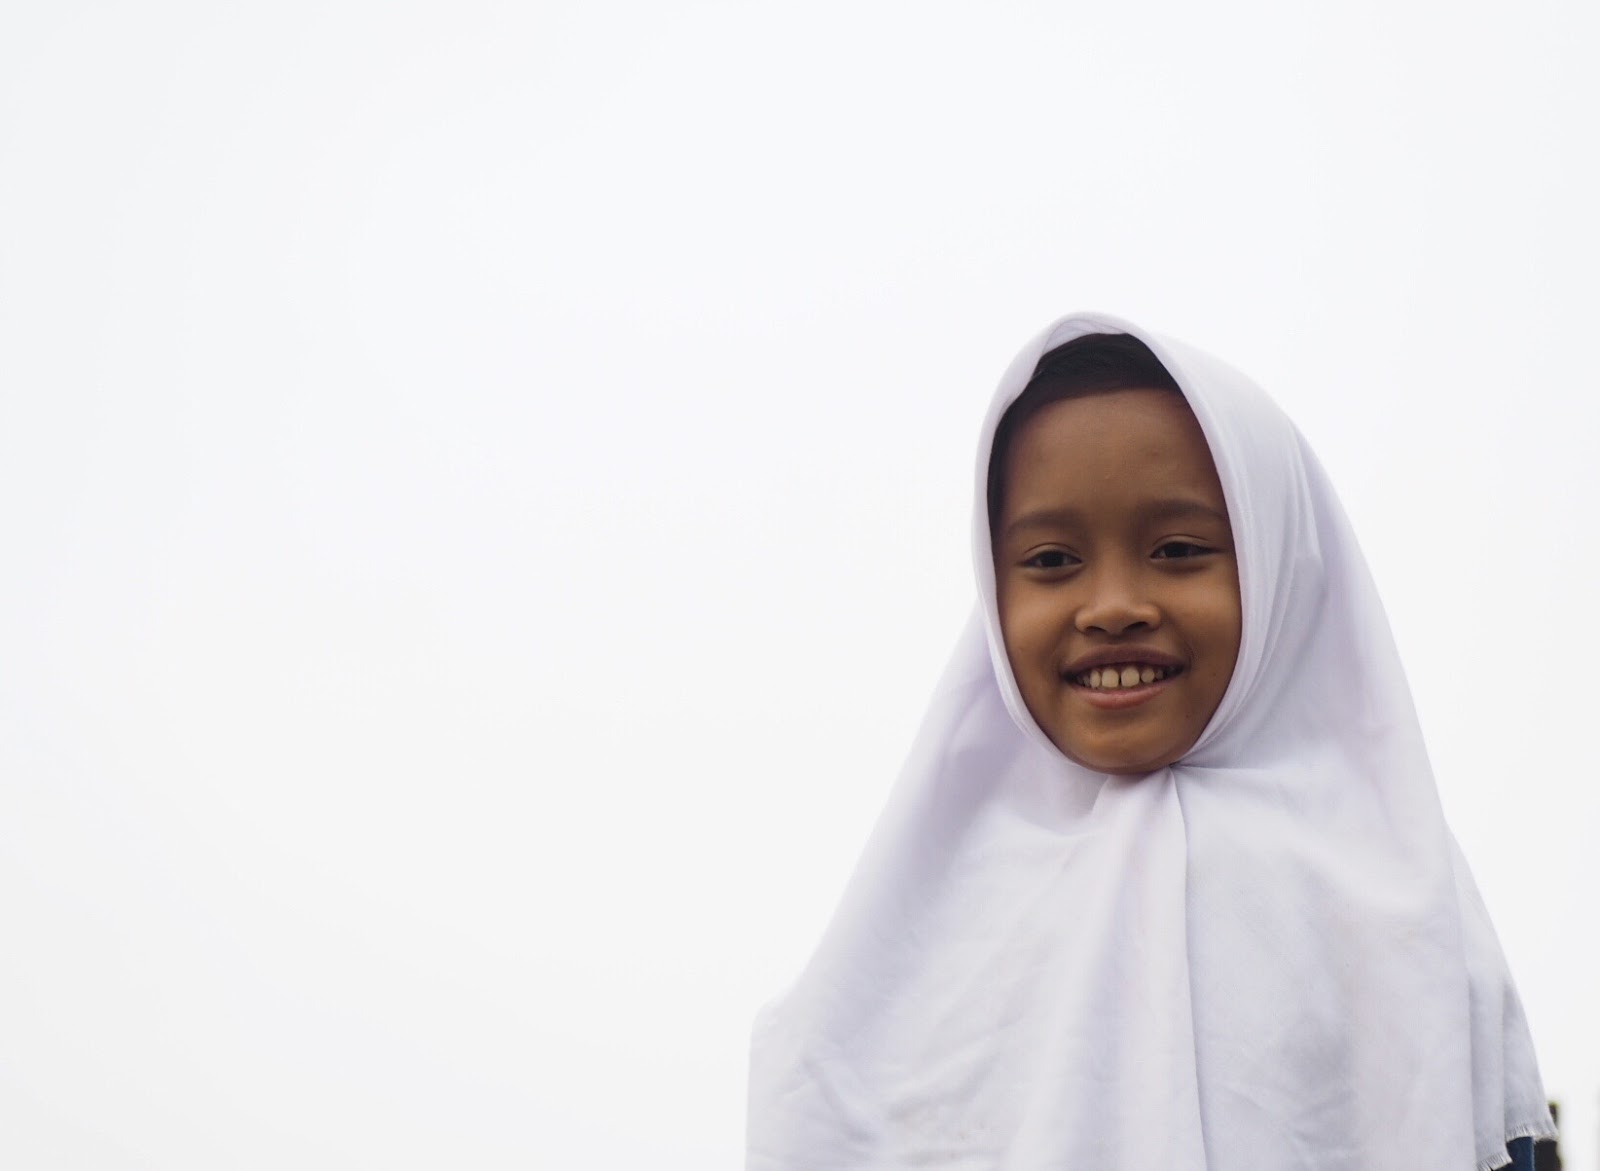 local child at Borobudur Temple 